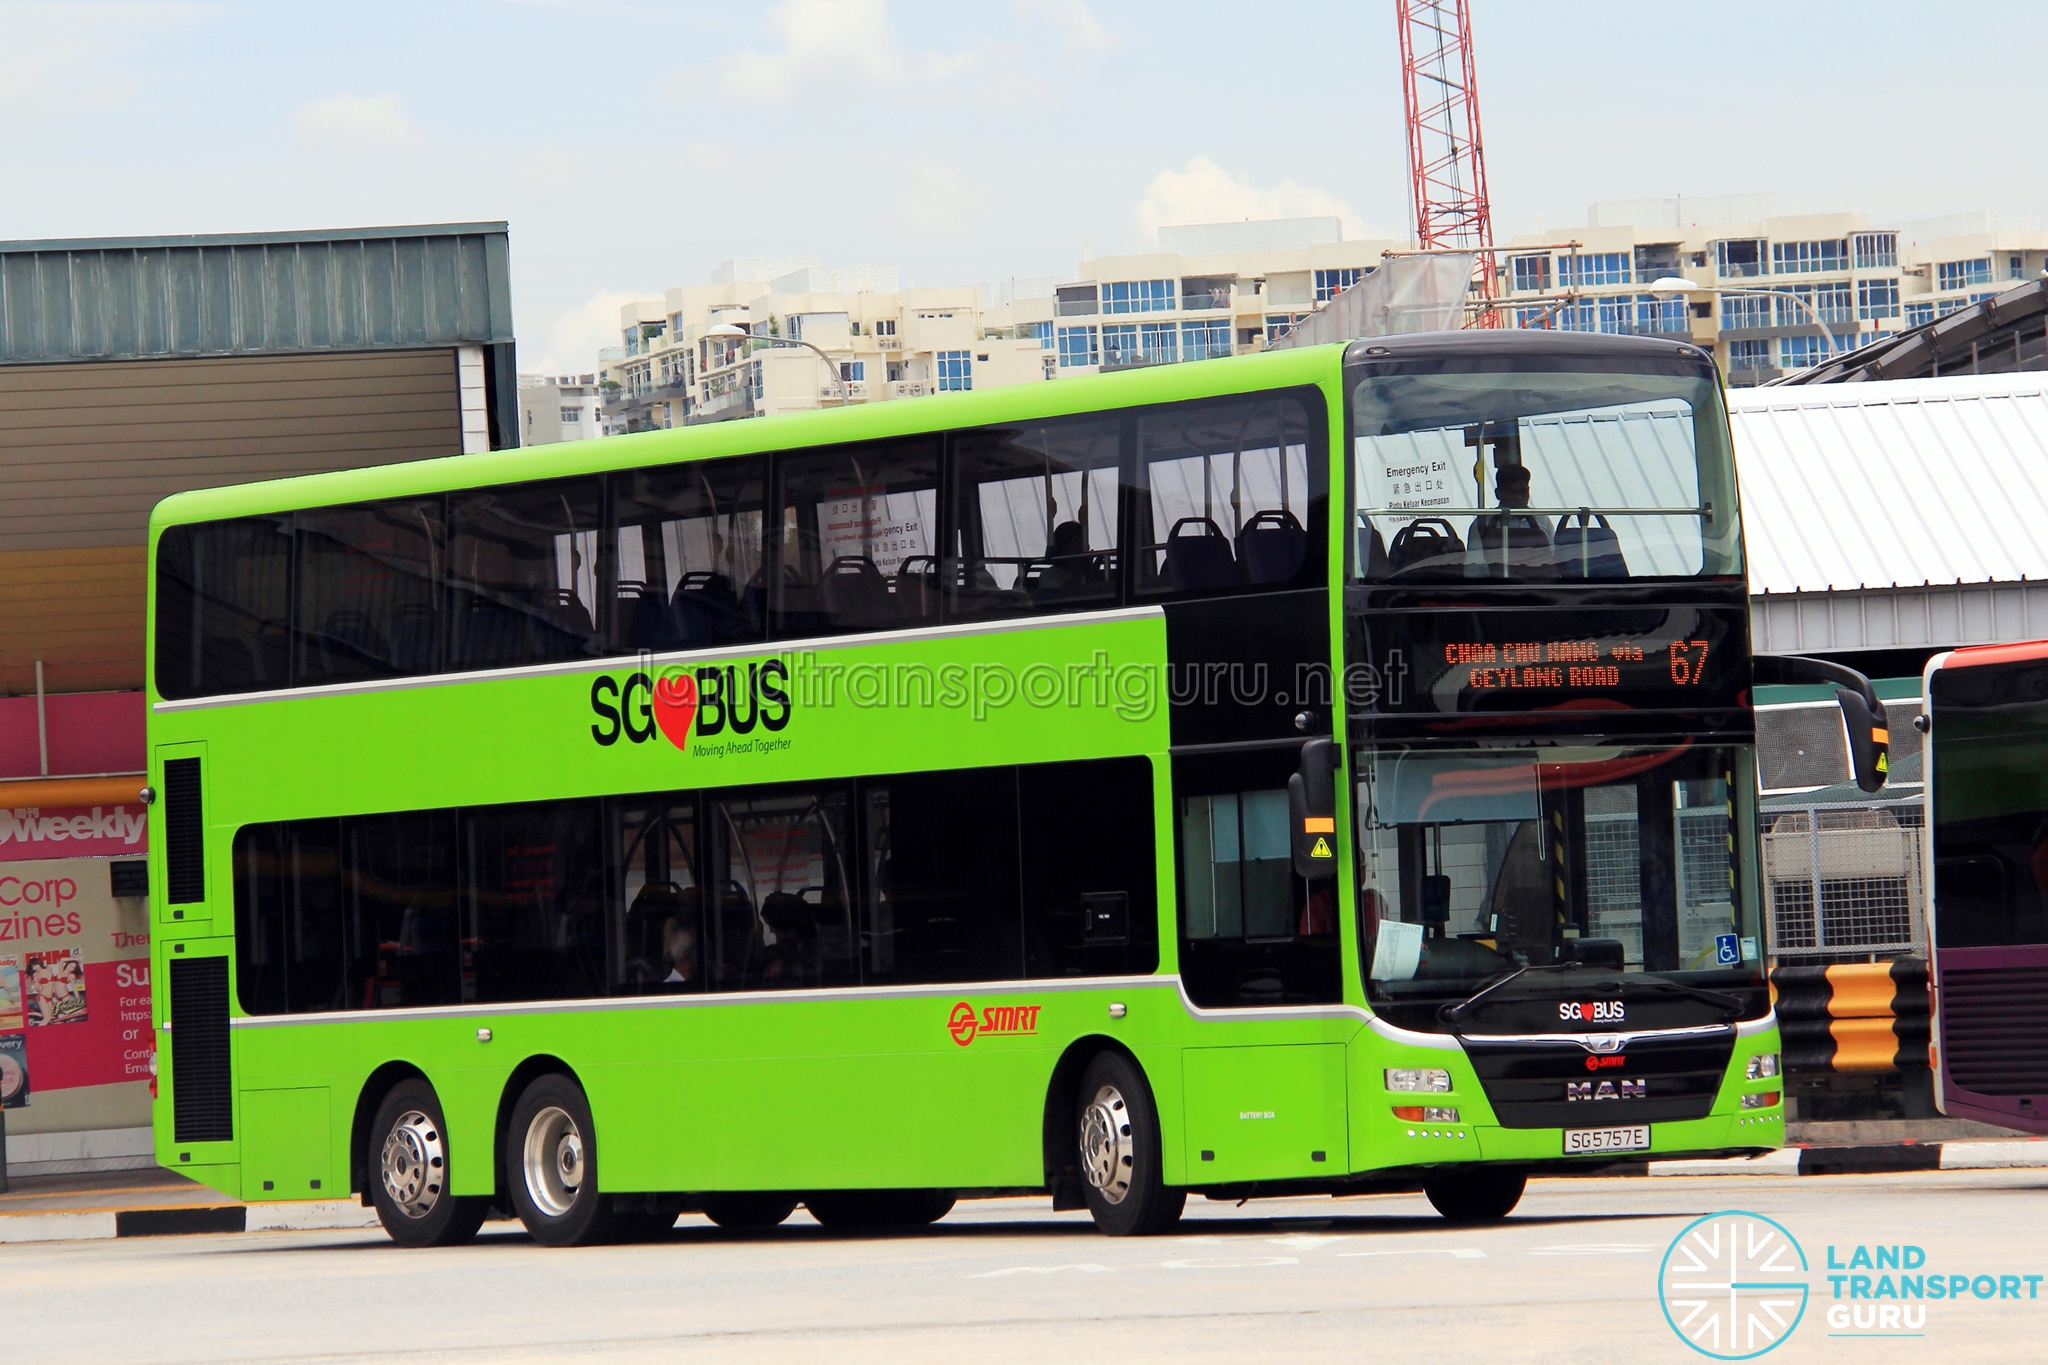 Q67 bus